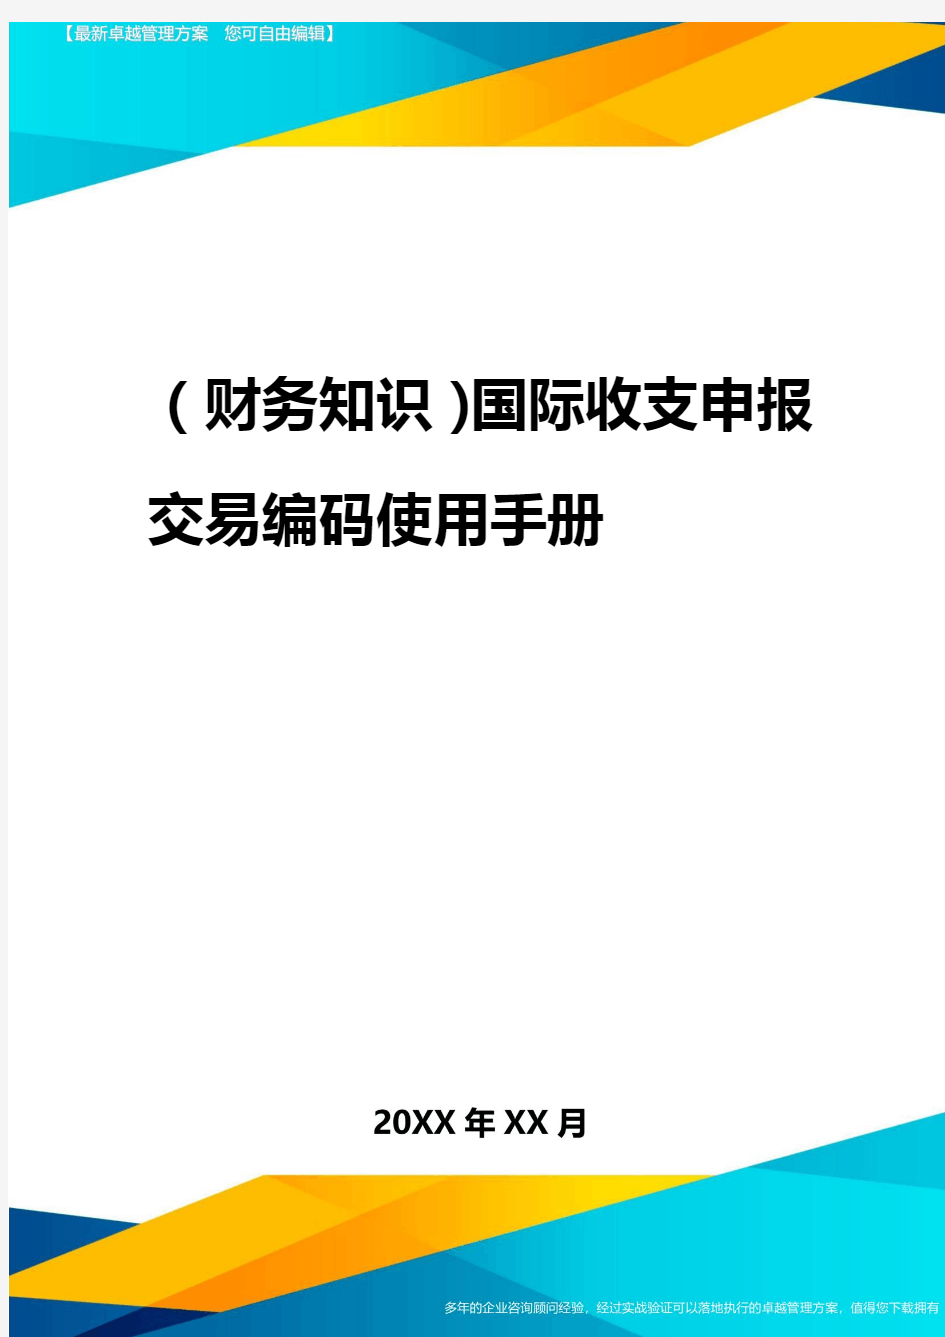 2020年(财务知识)国际收支申报交易编码使用手册